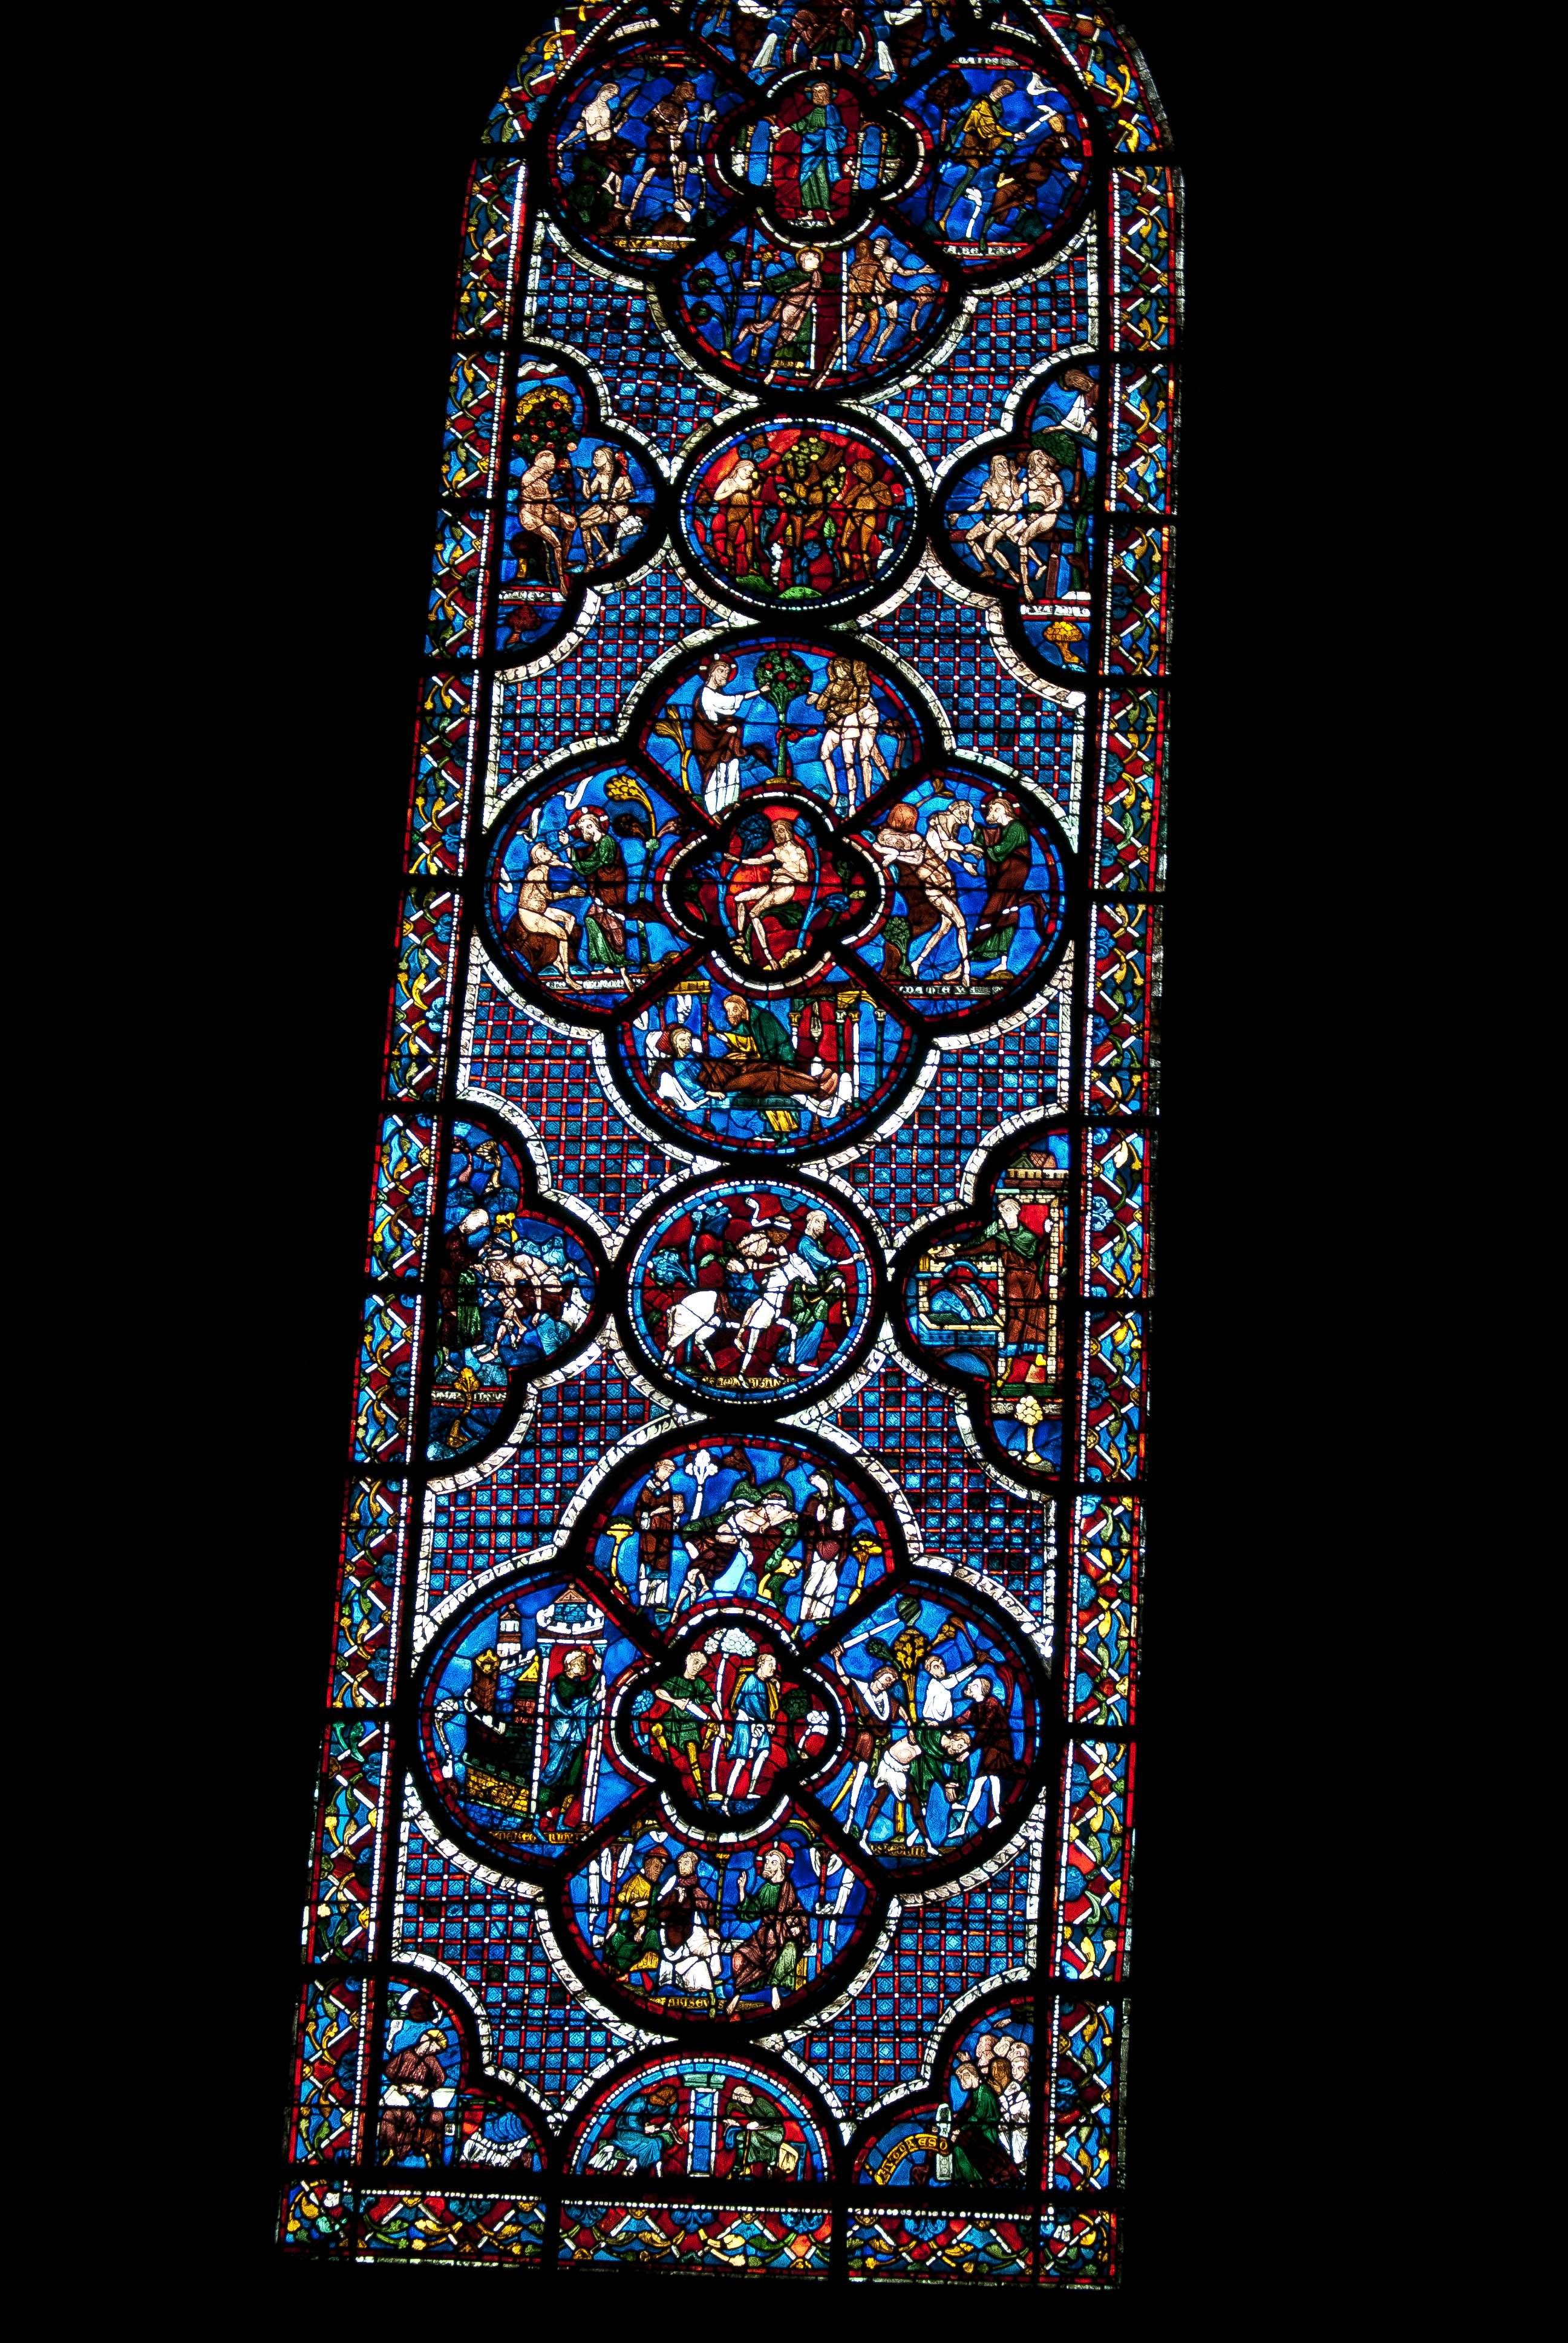 Las vidrieras de la catedral de Chartres - Chartres: Arte, espiritualidad y esoterismo. (6)